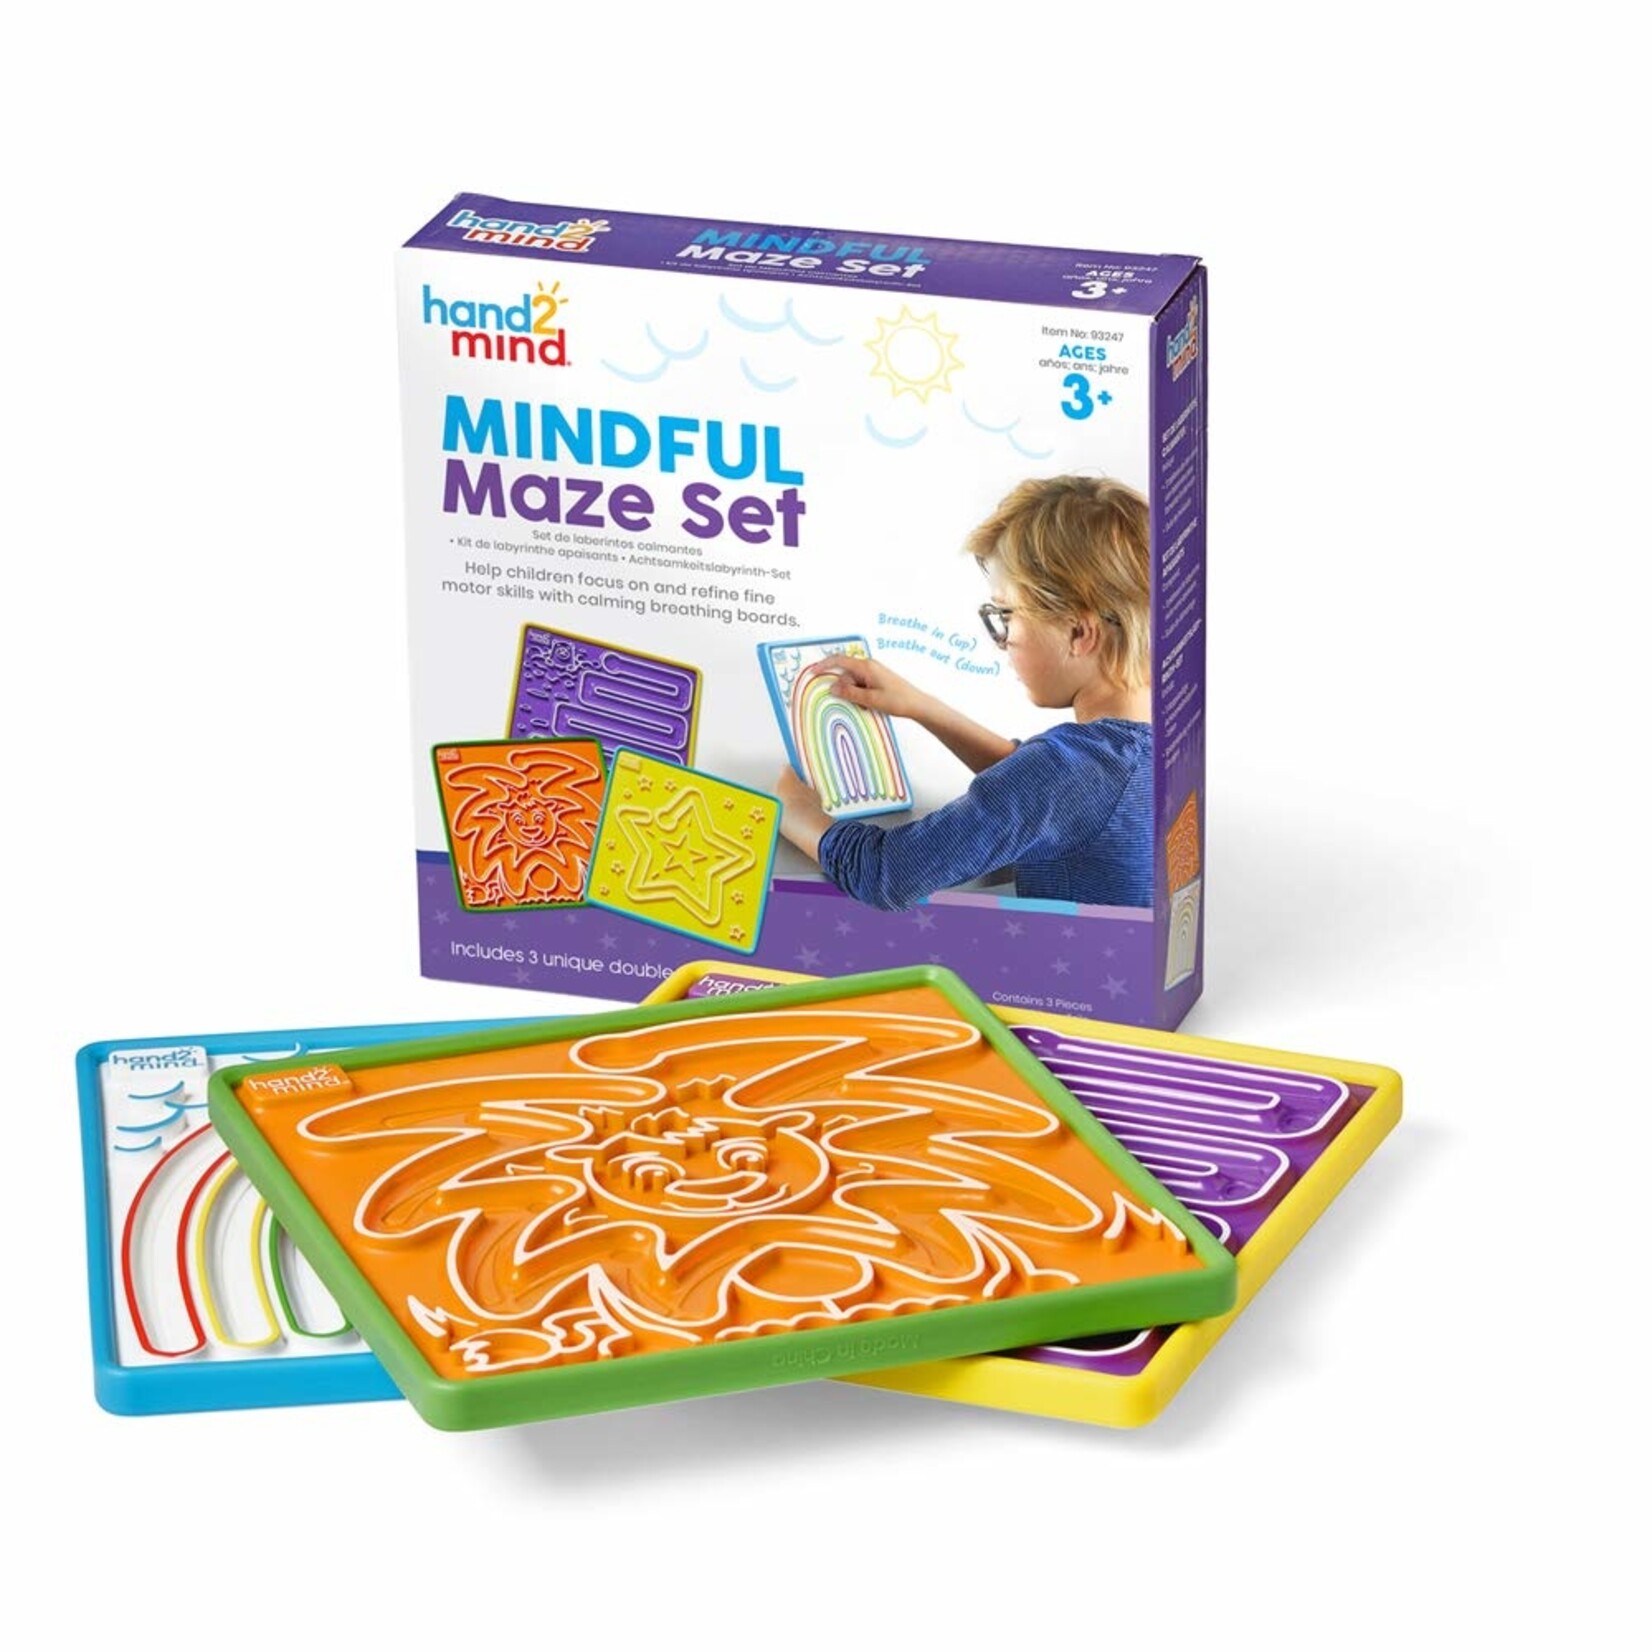 hand2mind Mindful Maze Set